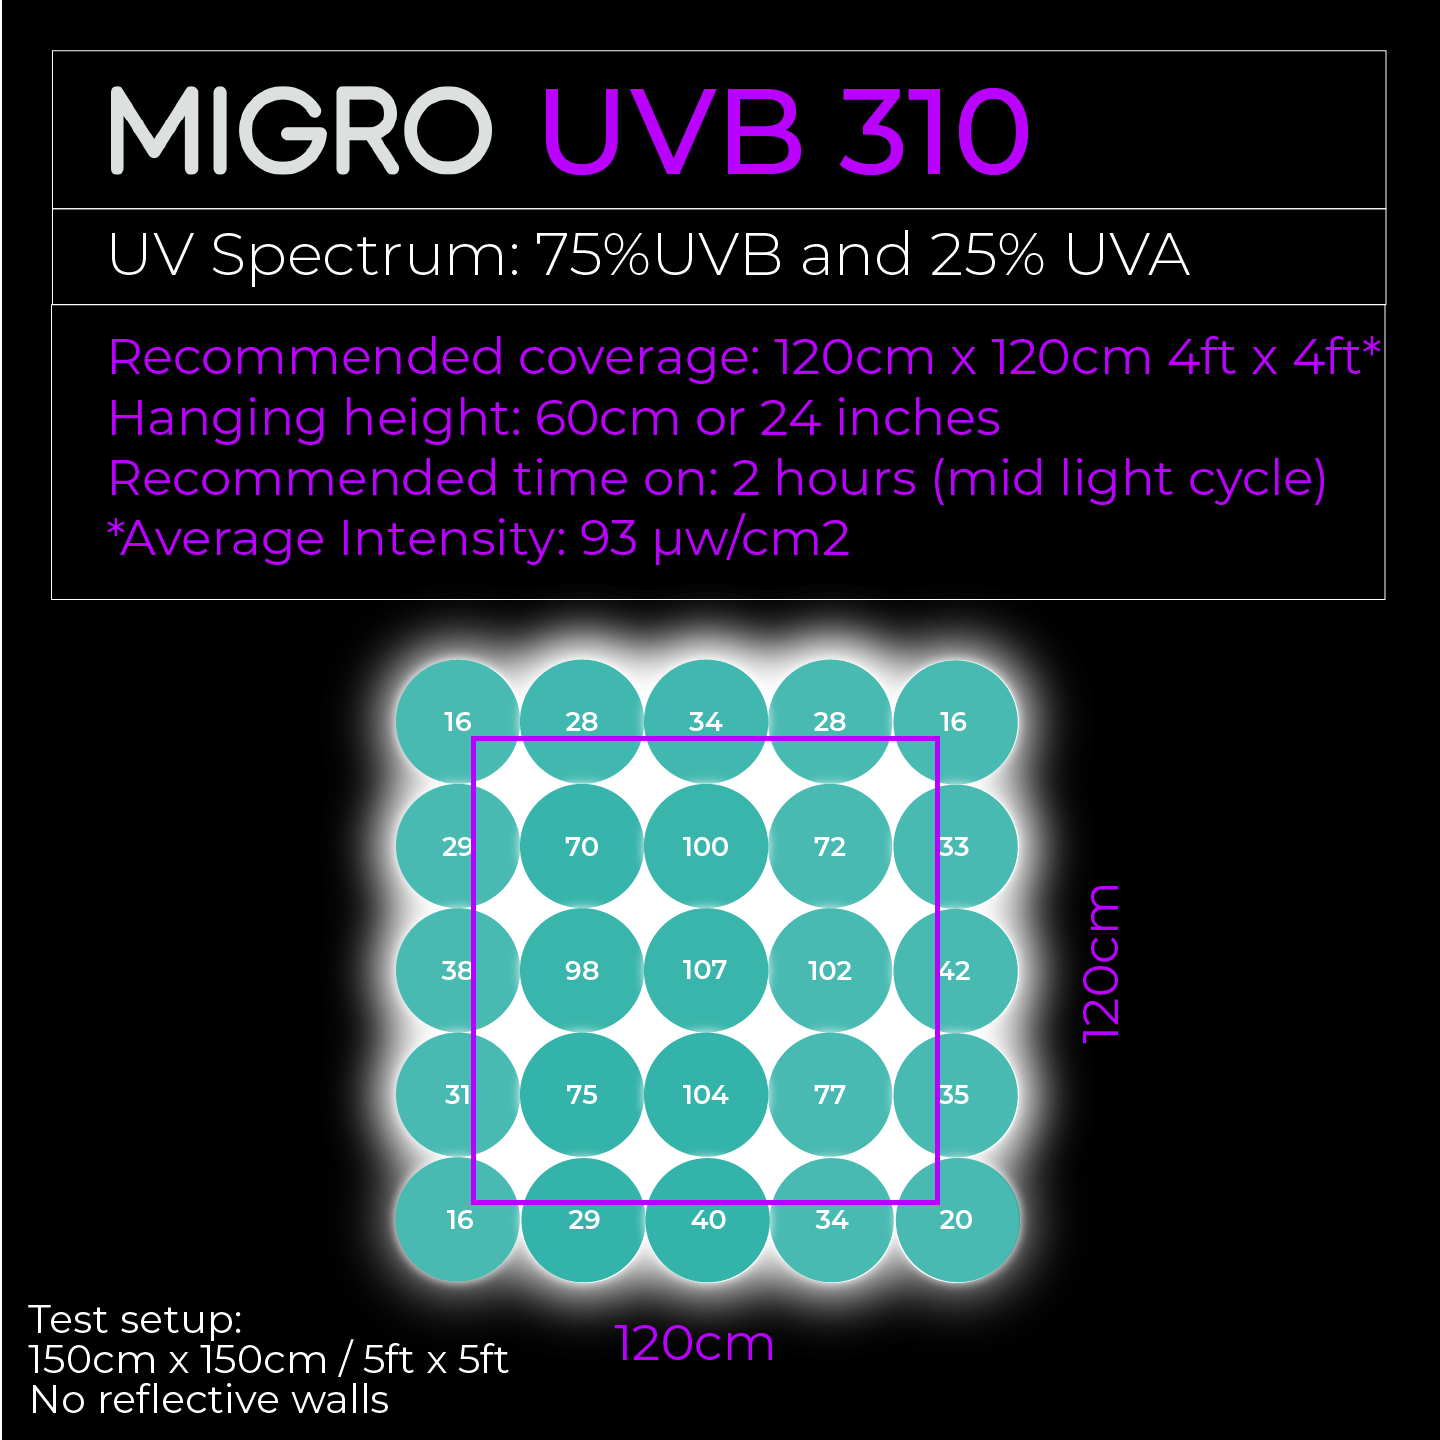 MIGRO UVB 310 fluorescent tube